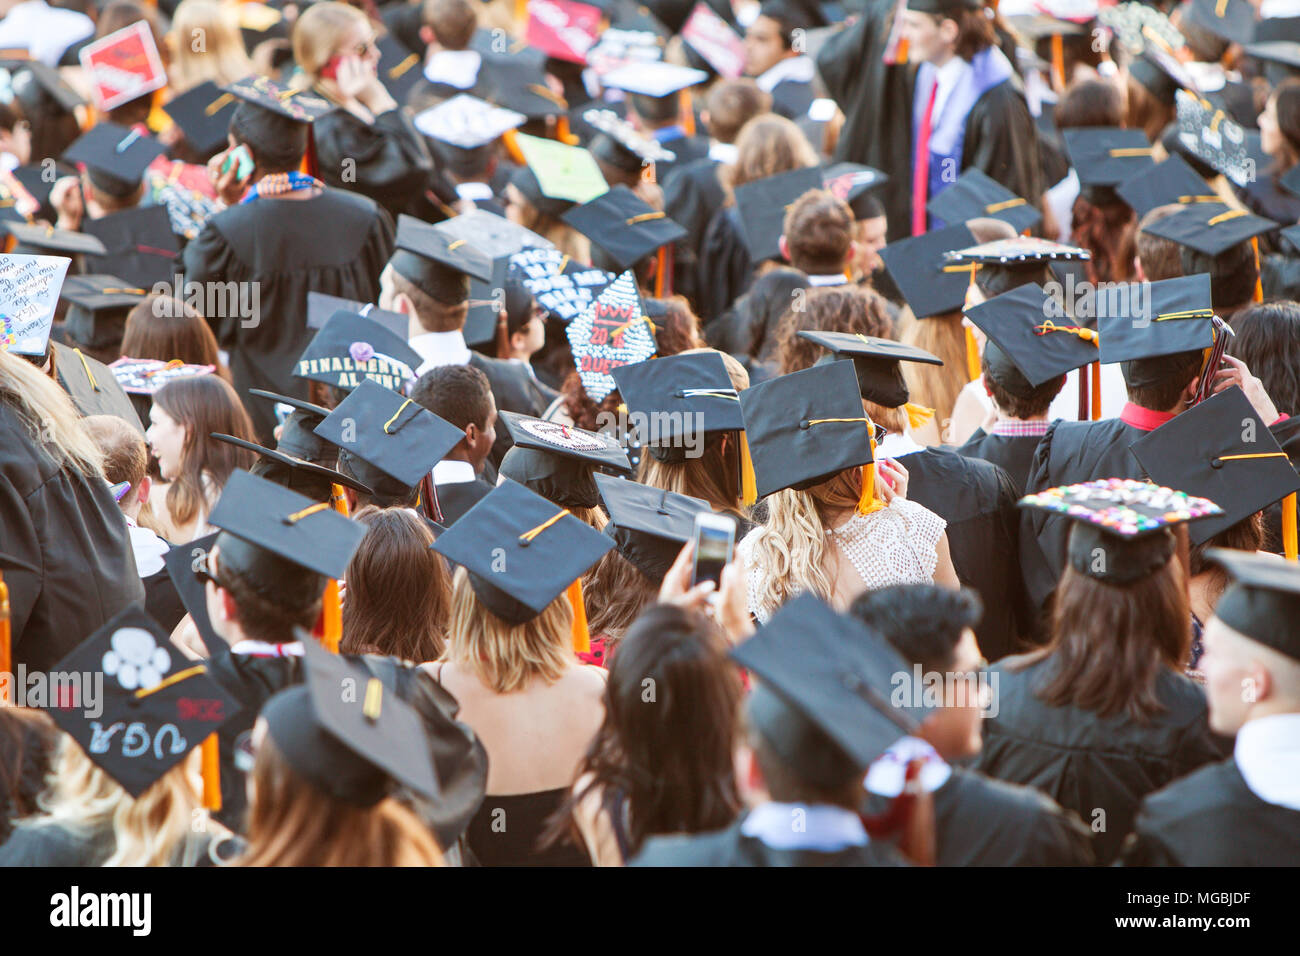 Universität von Georgia Absolventen ihre Mörser boards tragen zu sammeln, wie sie für die Graduierung Aktivitäten am 13. Mai 2016 in Athen, Ga vorbereiten. Stockfoto